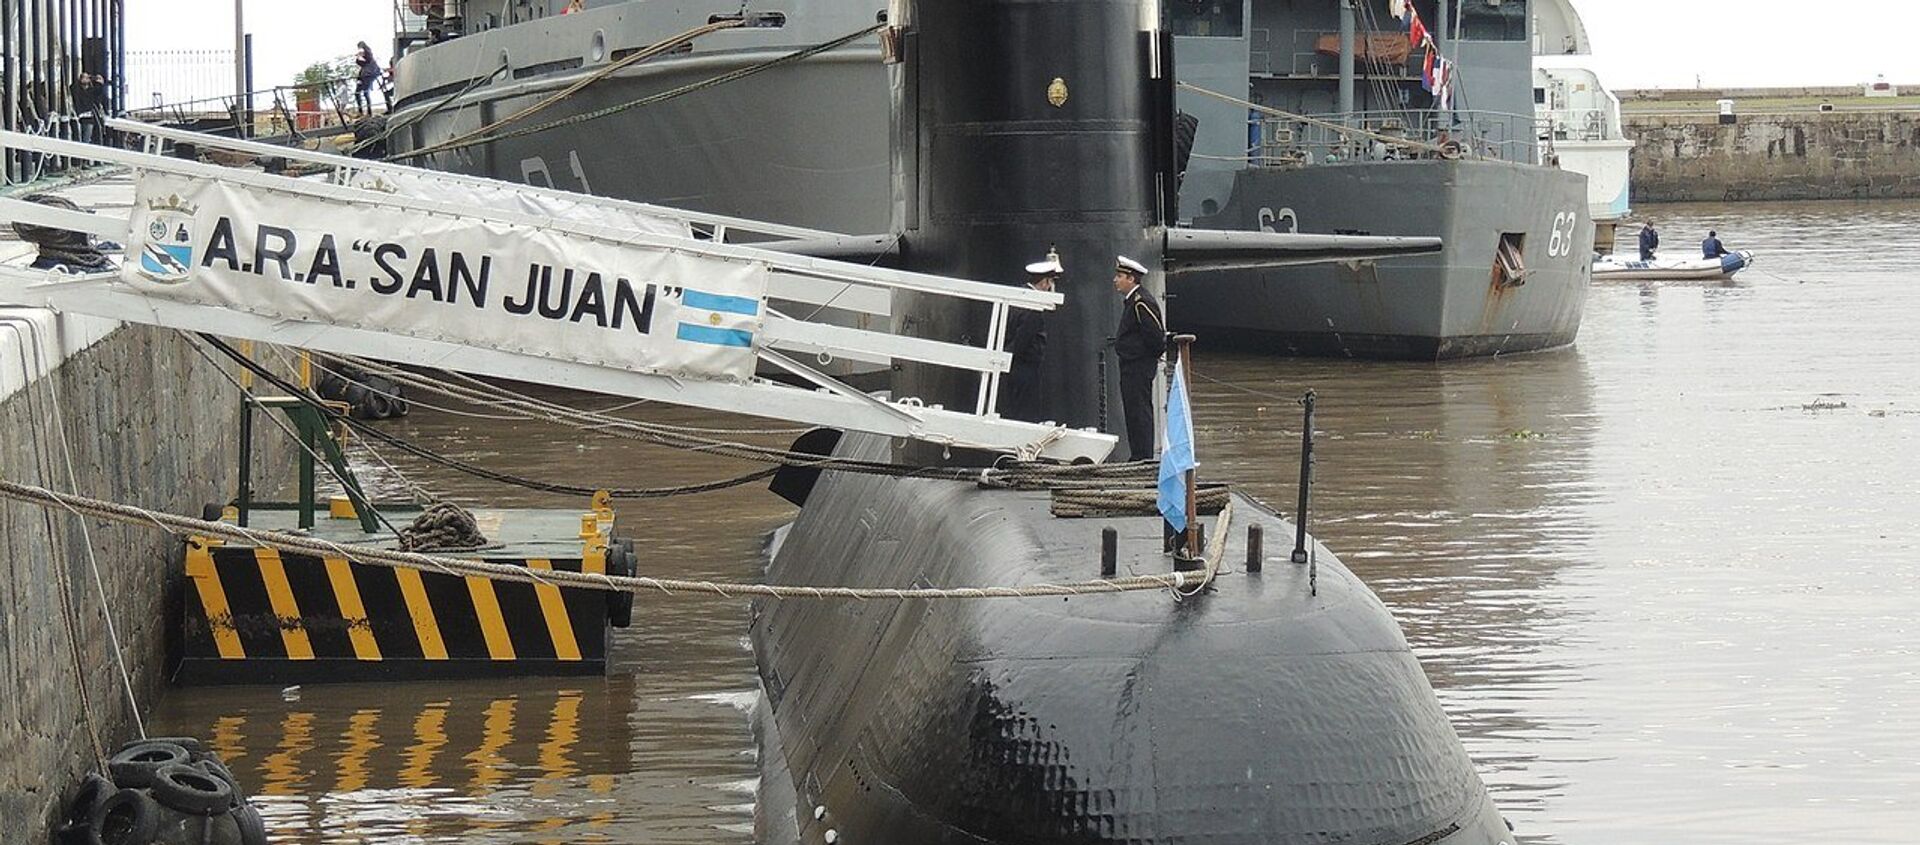 Submarino ARA San Juan en el Apostadero Naval de Buenos Aires, durante una jornada de puertas abiertas en mayo de 2017 por el día de la Armada Argentina.  - Sputnik Mundo, 1920, 27.10.2020